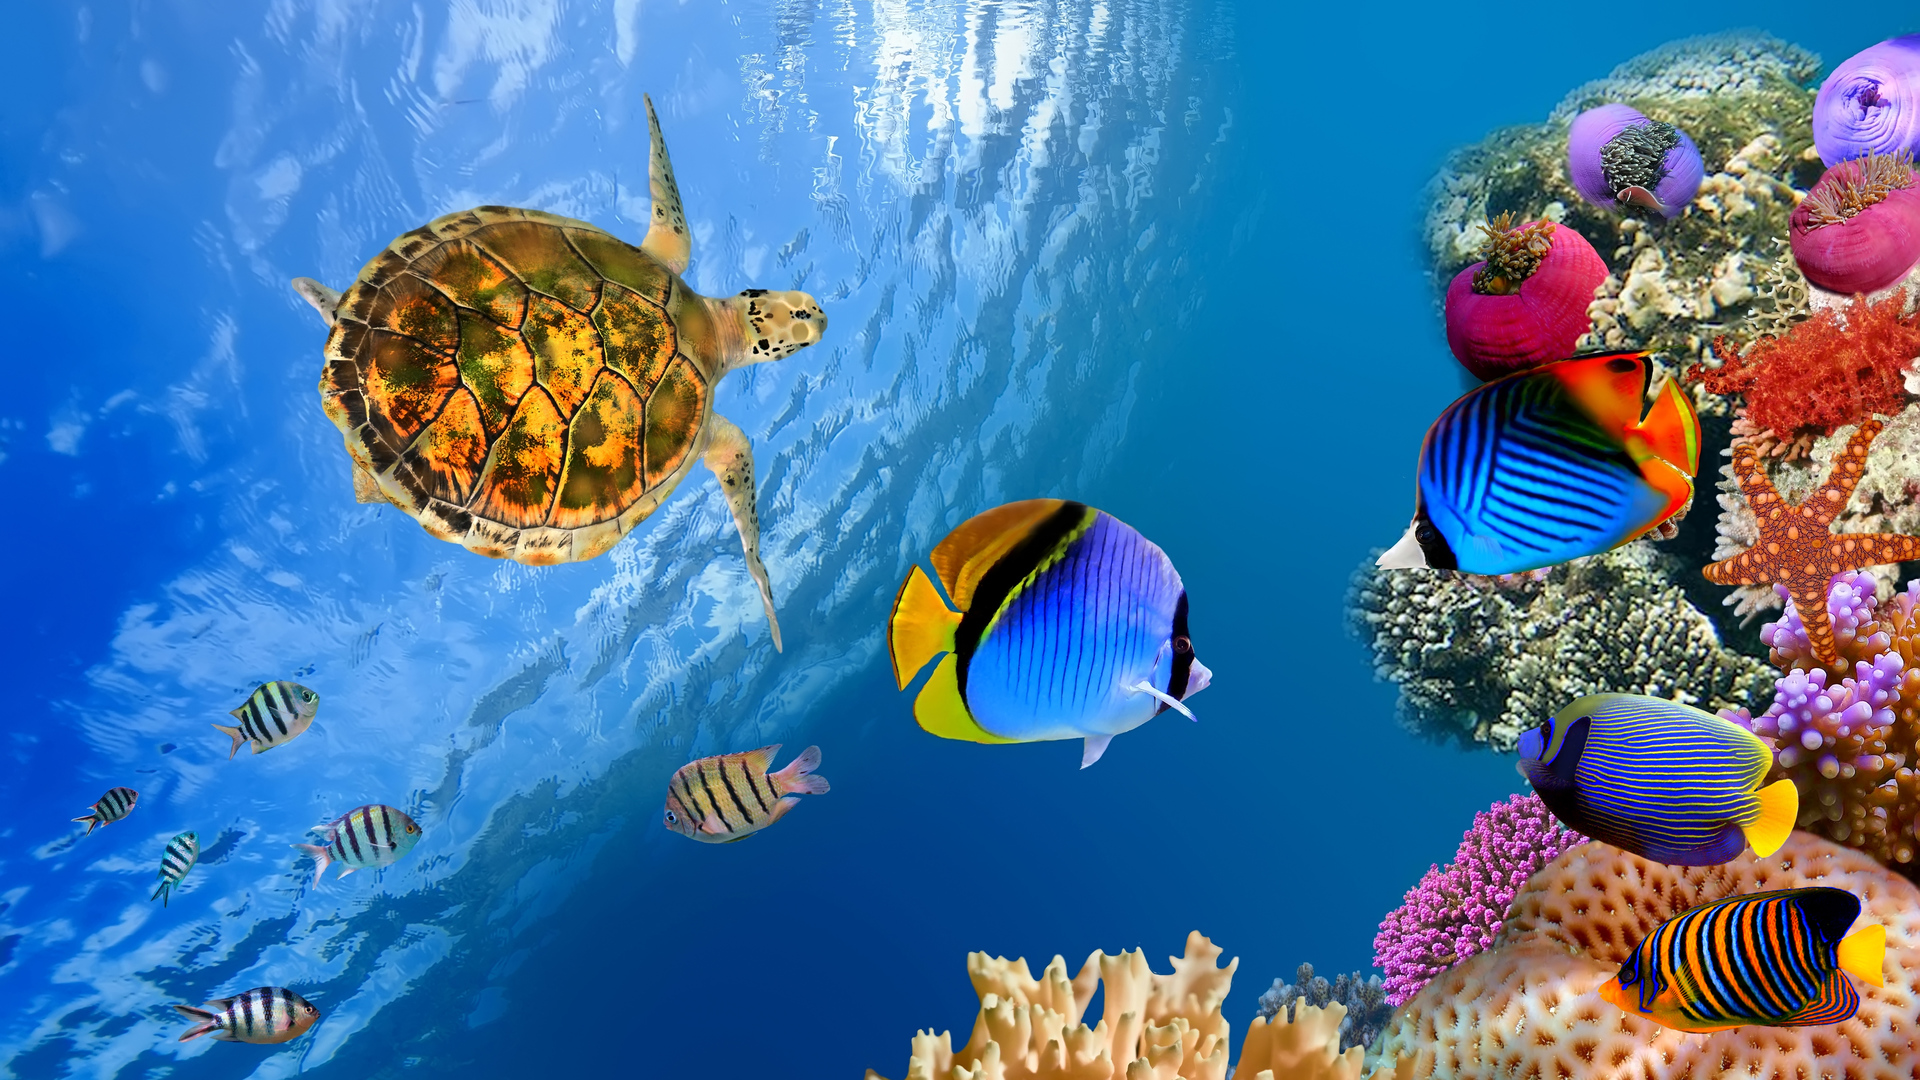 Underwater Landscape 4k Ultra HD Wallpaper